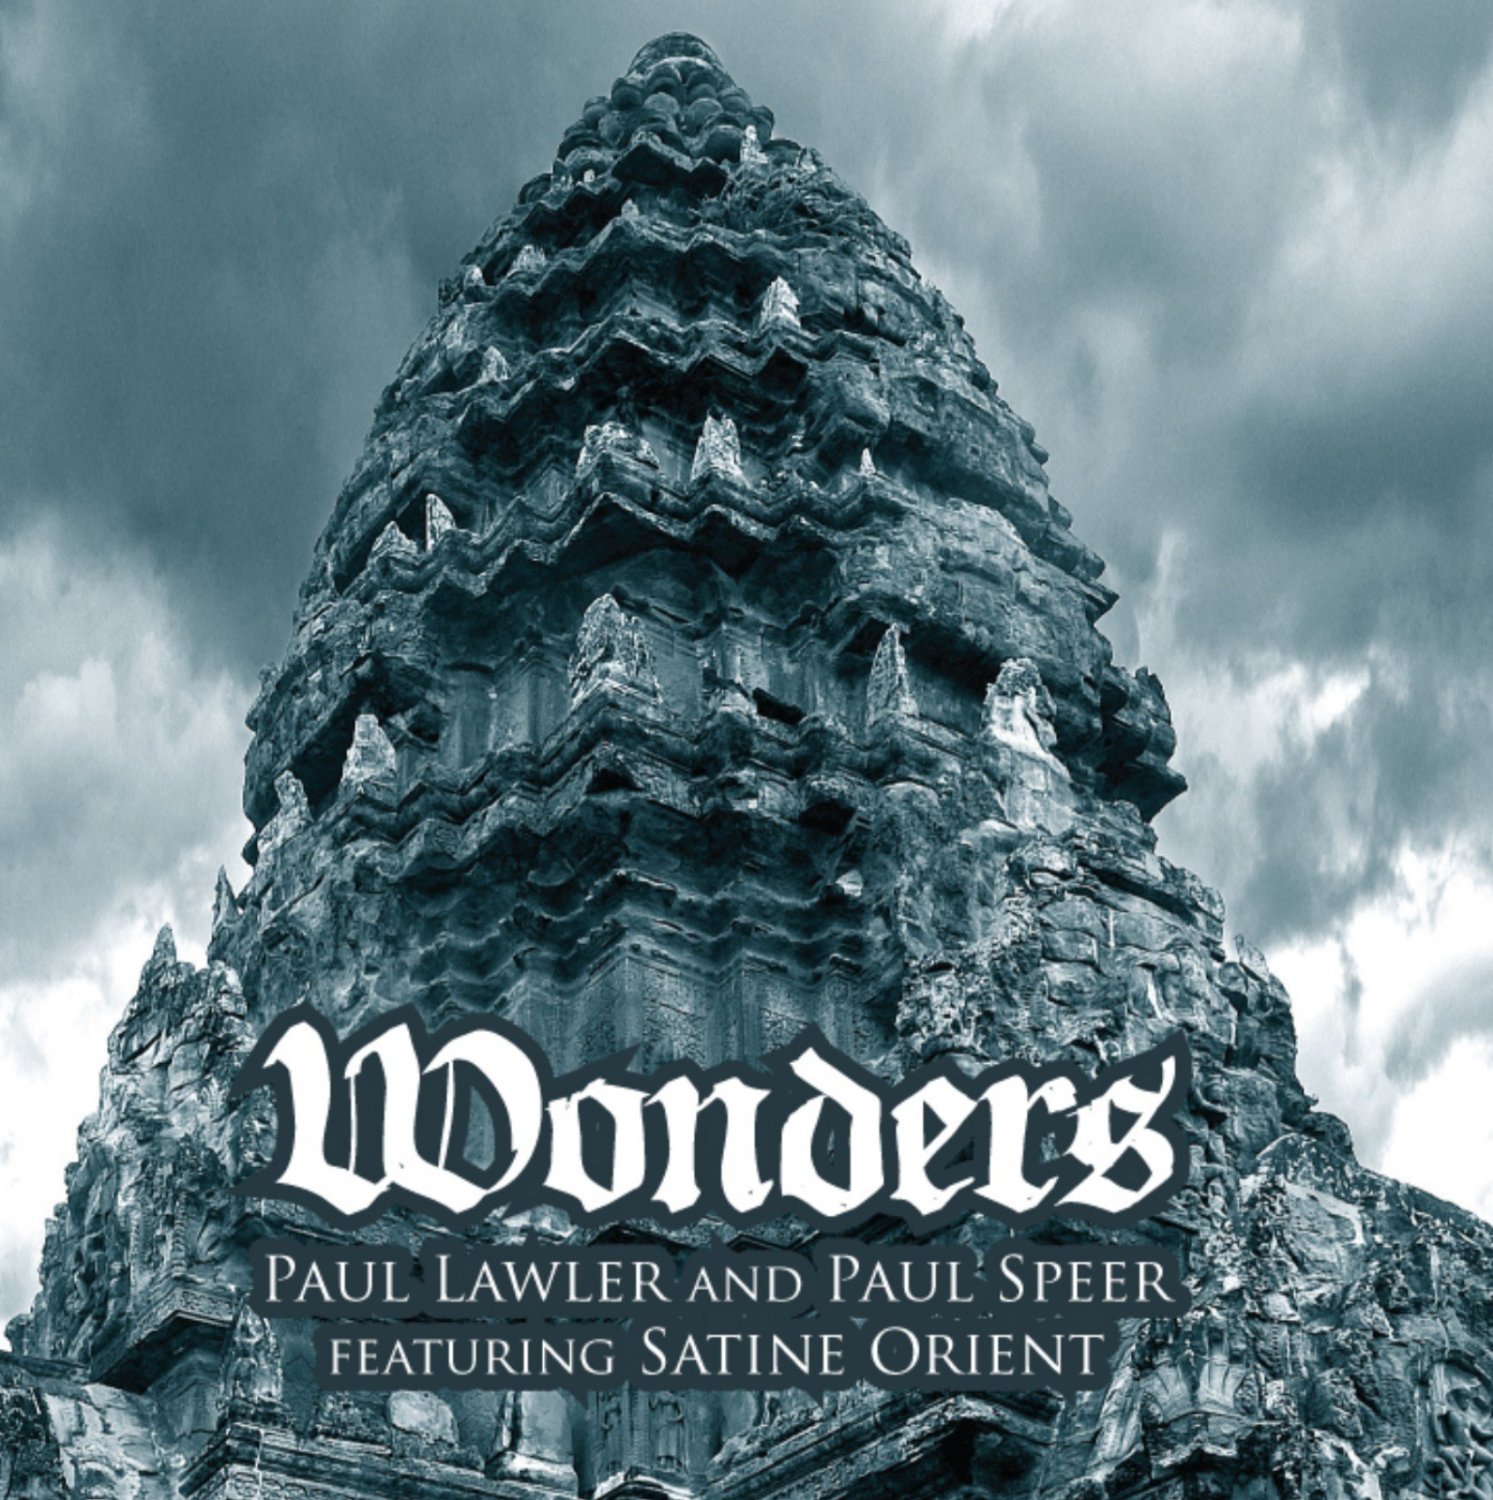 Paul Lawler & Paul Speer featuring Satine Orient — Wonders